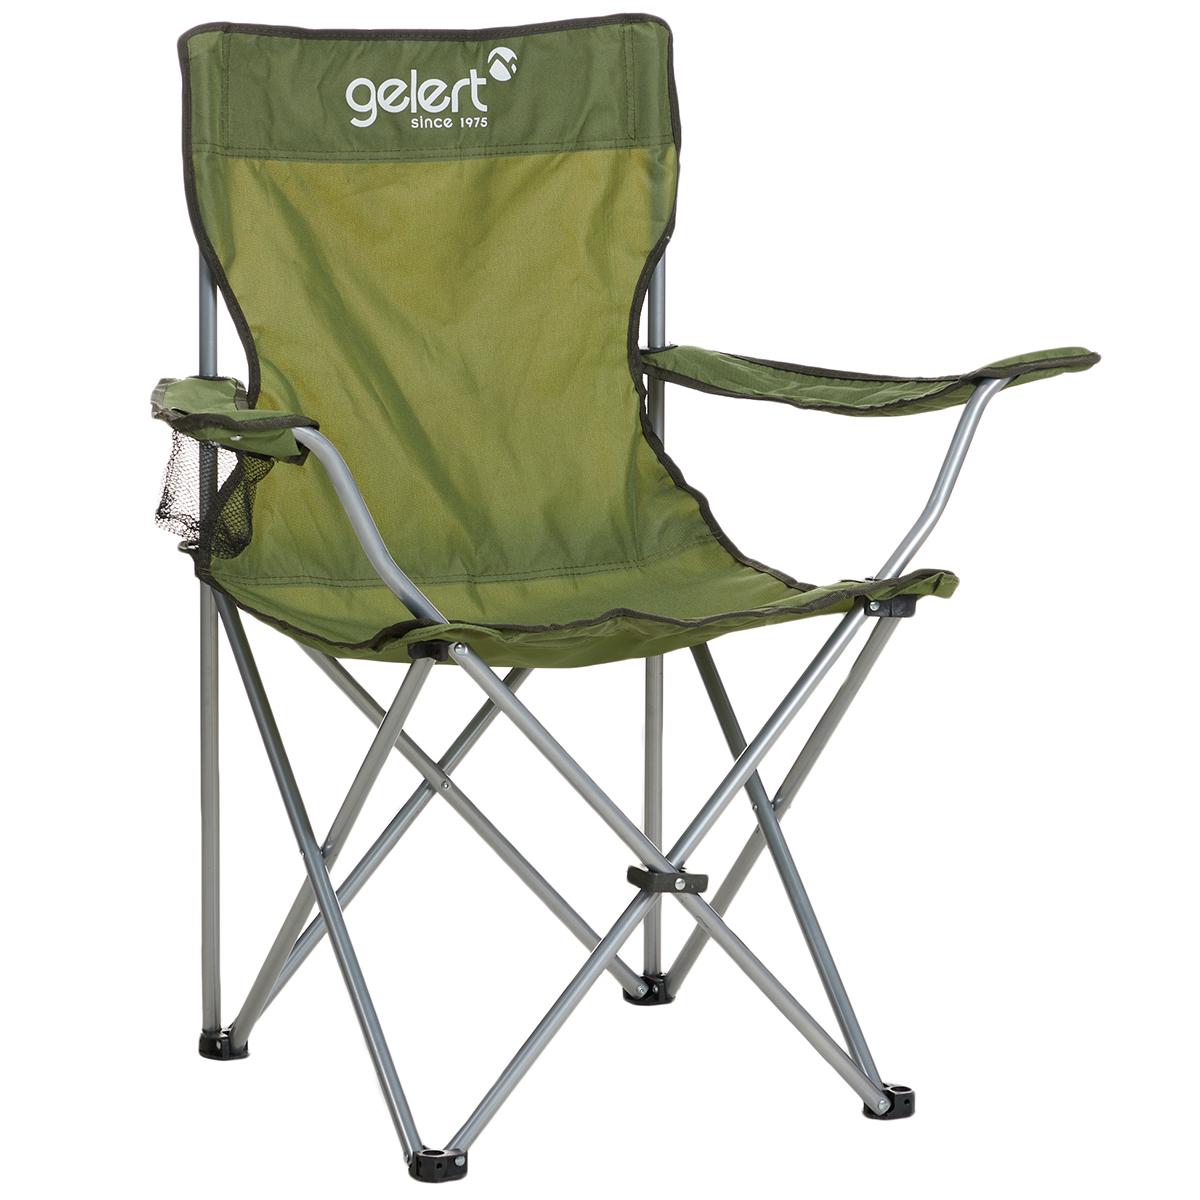 Gelert Camp Chair